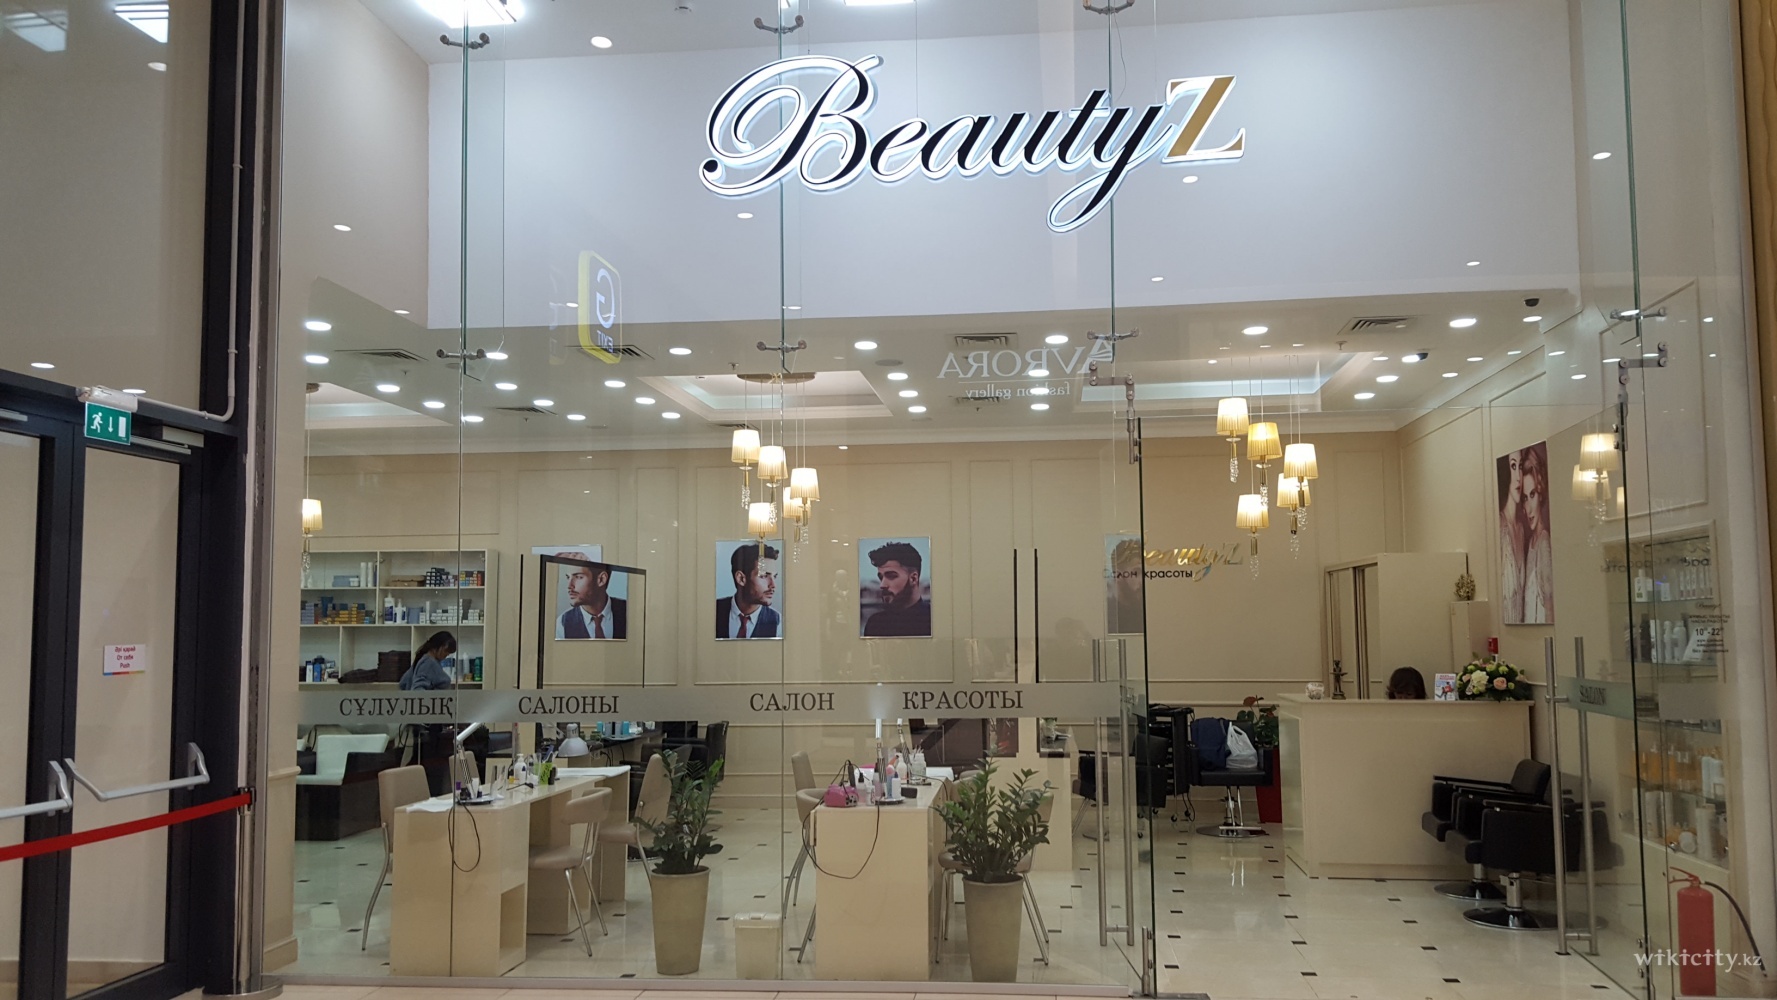 Фото BeautyZ Астана. Находится в ТРЦ MEGA SILK WAY, 1этаж, EXIT G